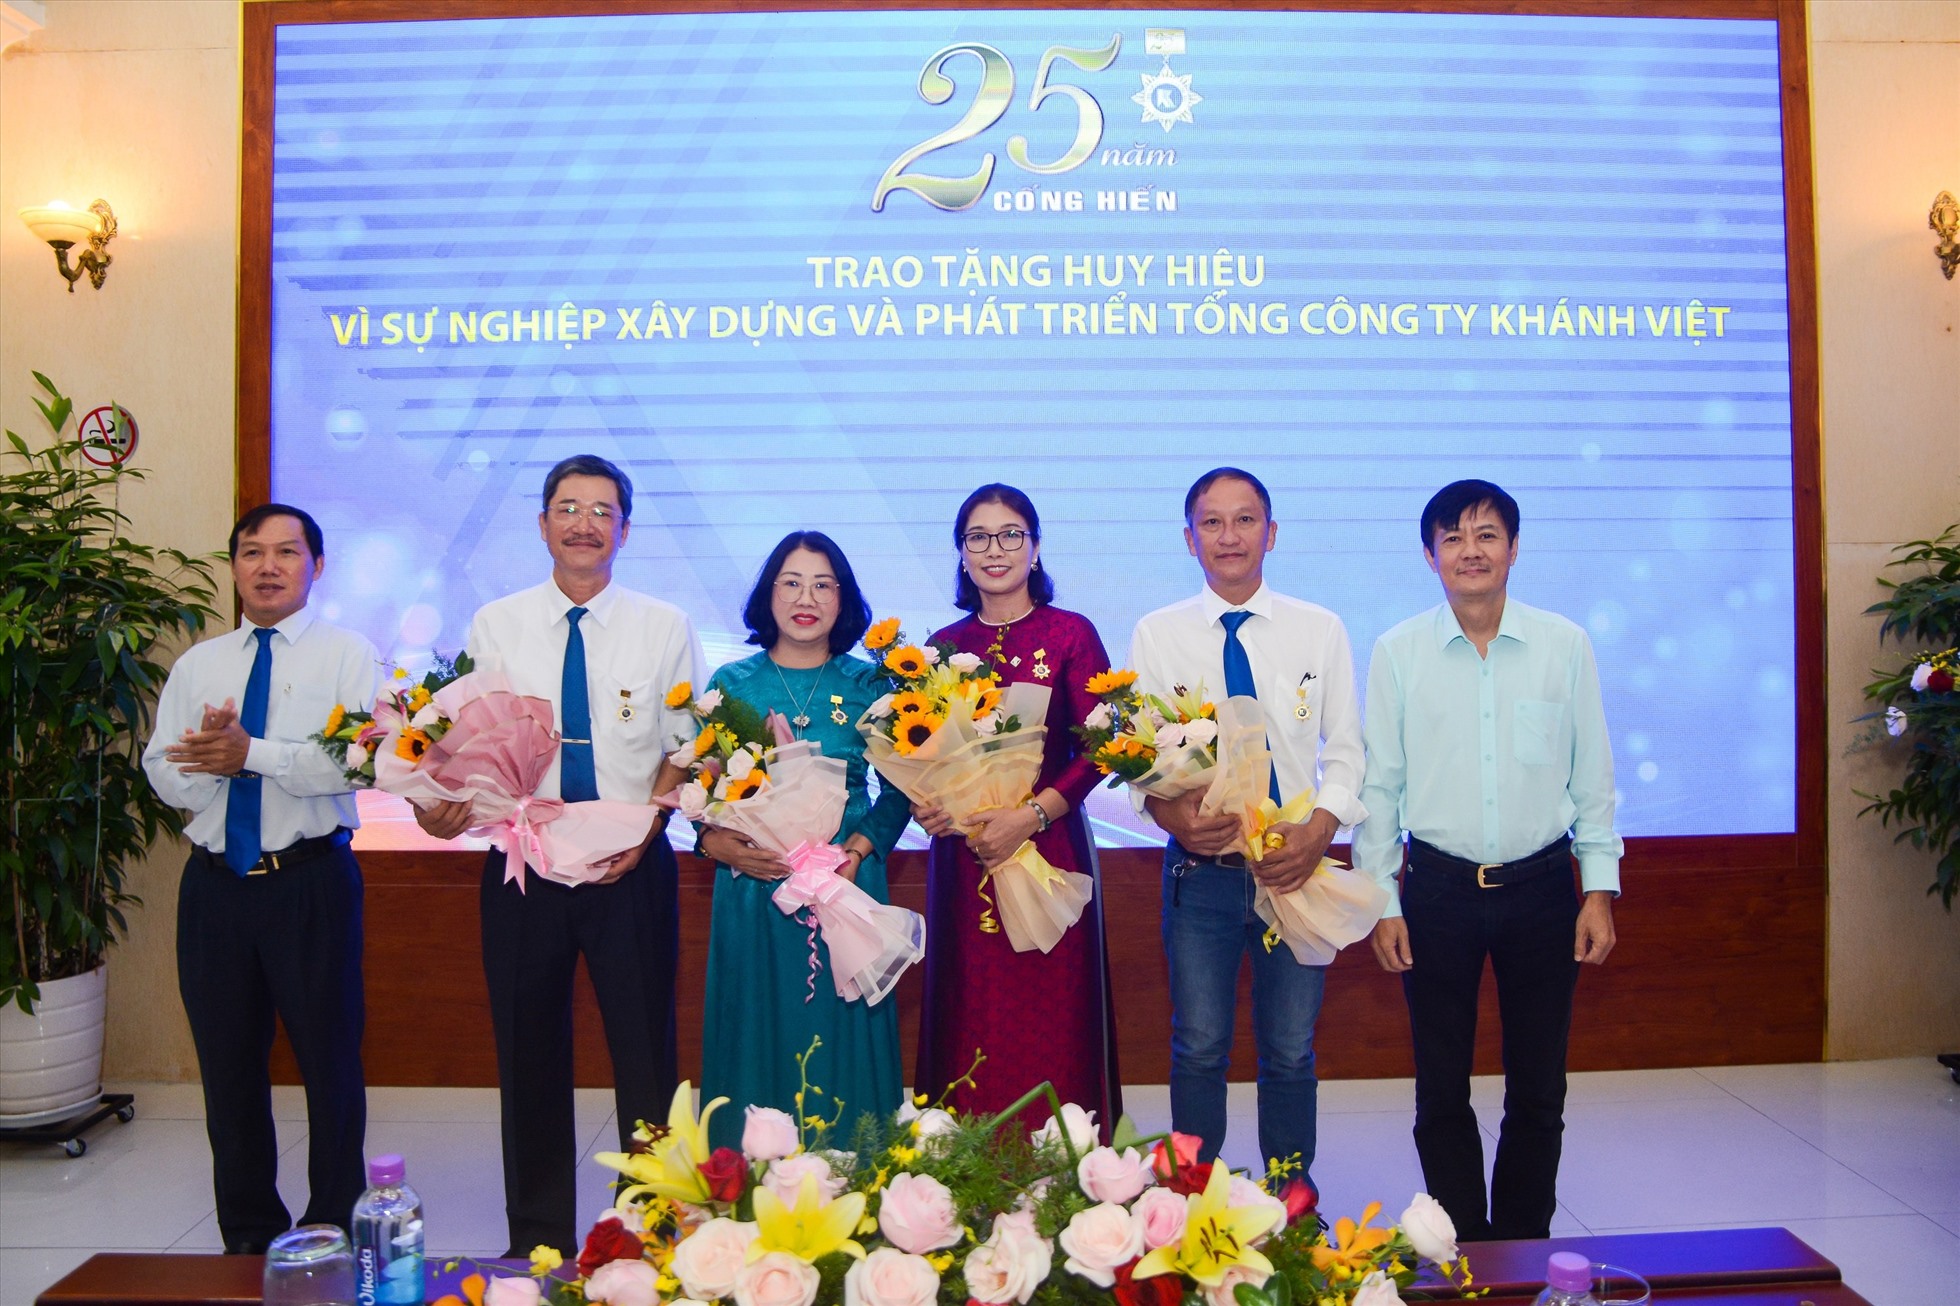 Lãnh đạo Tổng Công ty Khánh Việt trao huy hiệu cảm ơn người lao động đã gắn bó lâu dài, góp phần xây dựng công ty phát triển. Ảnh: K.H